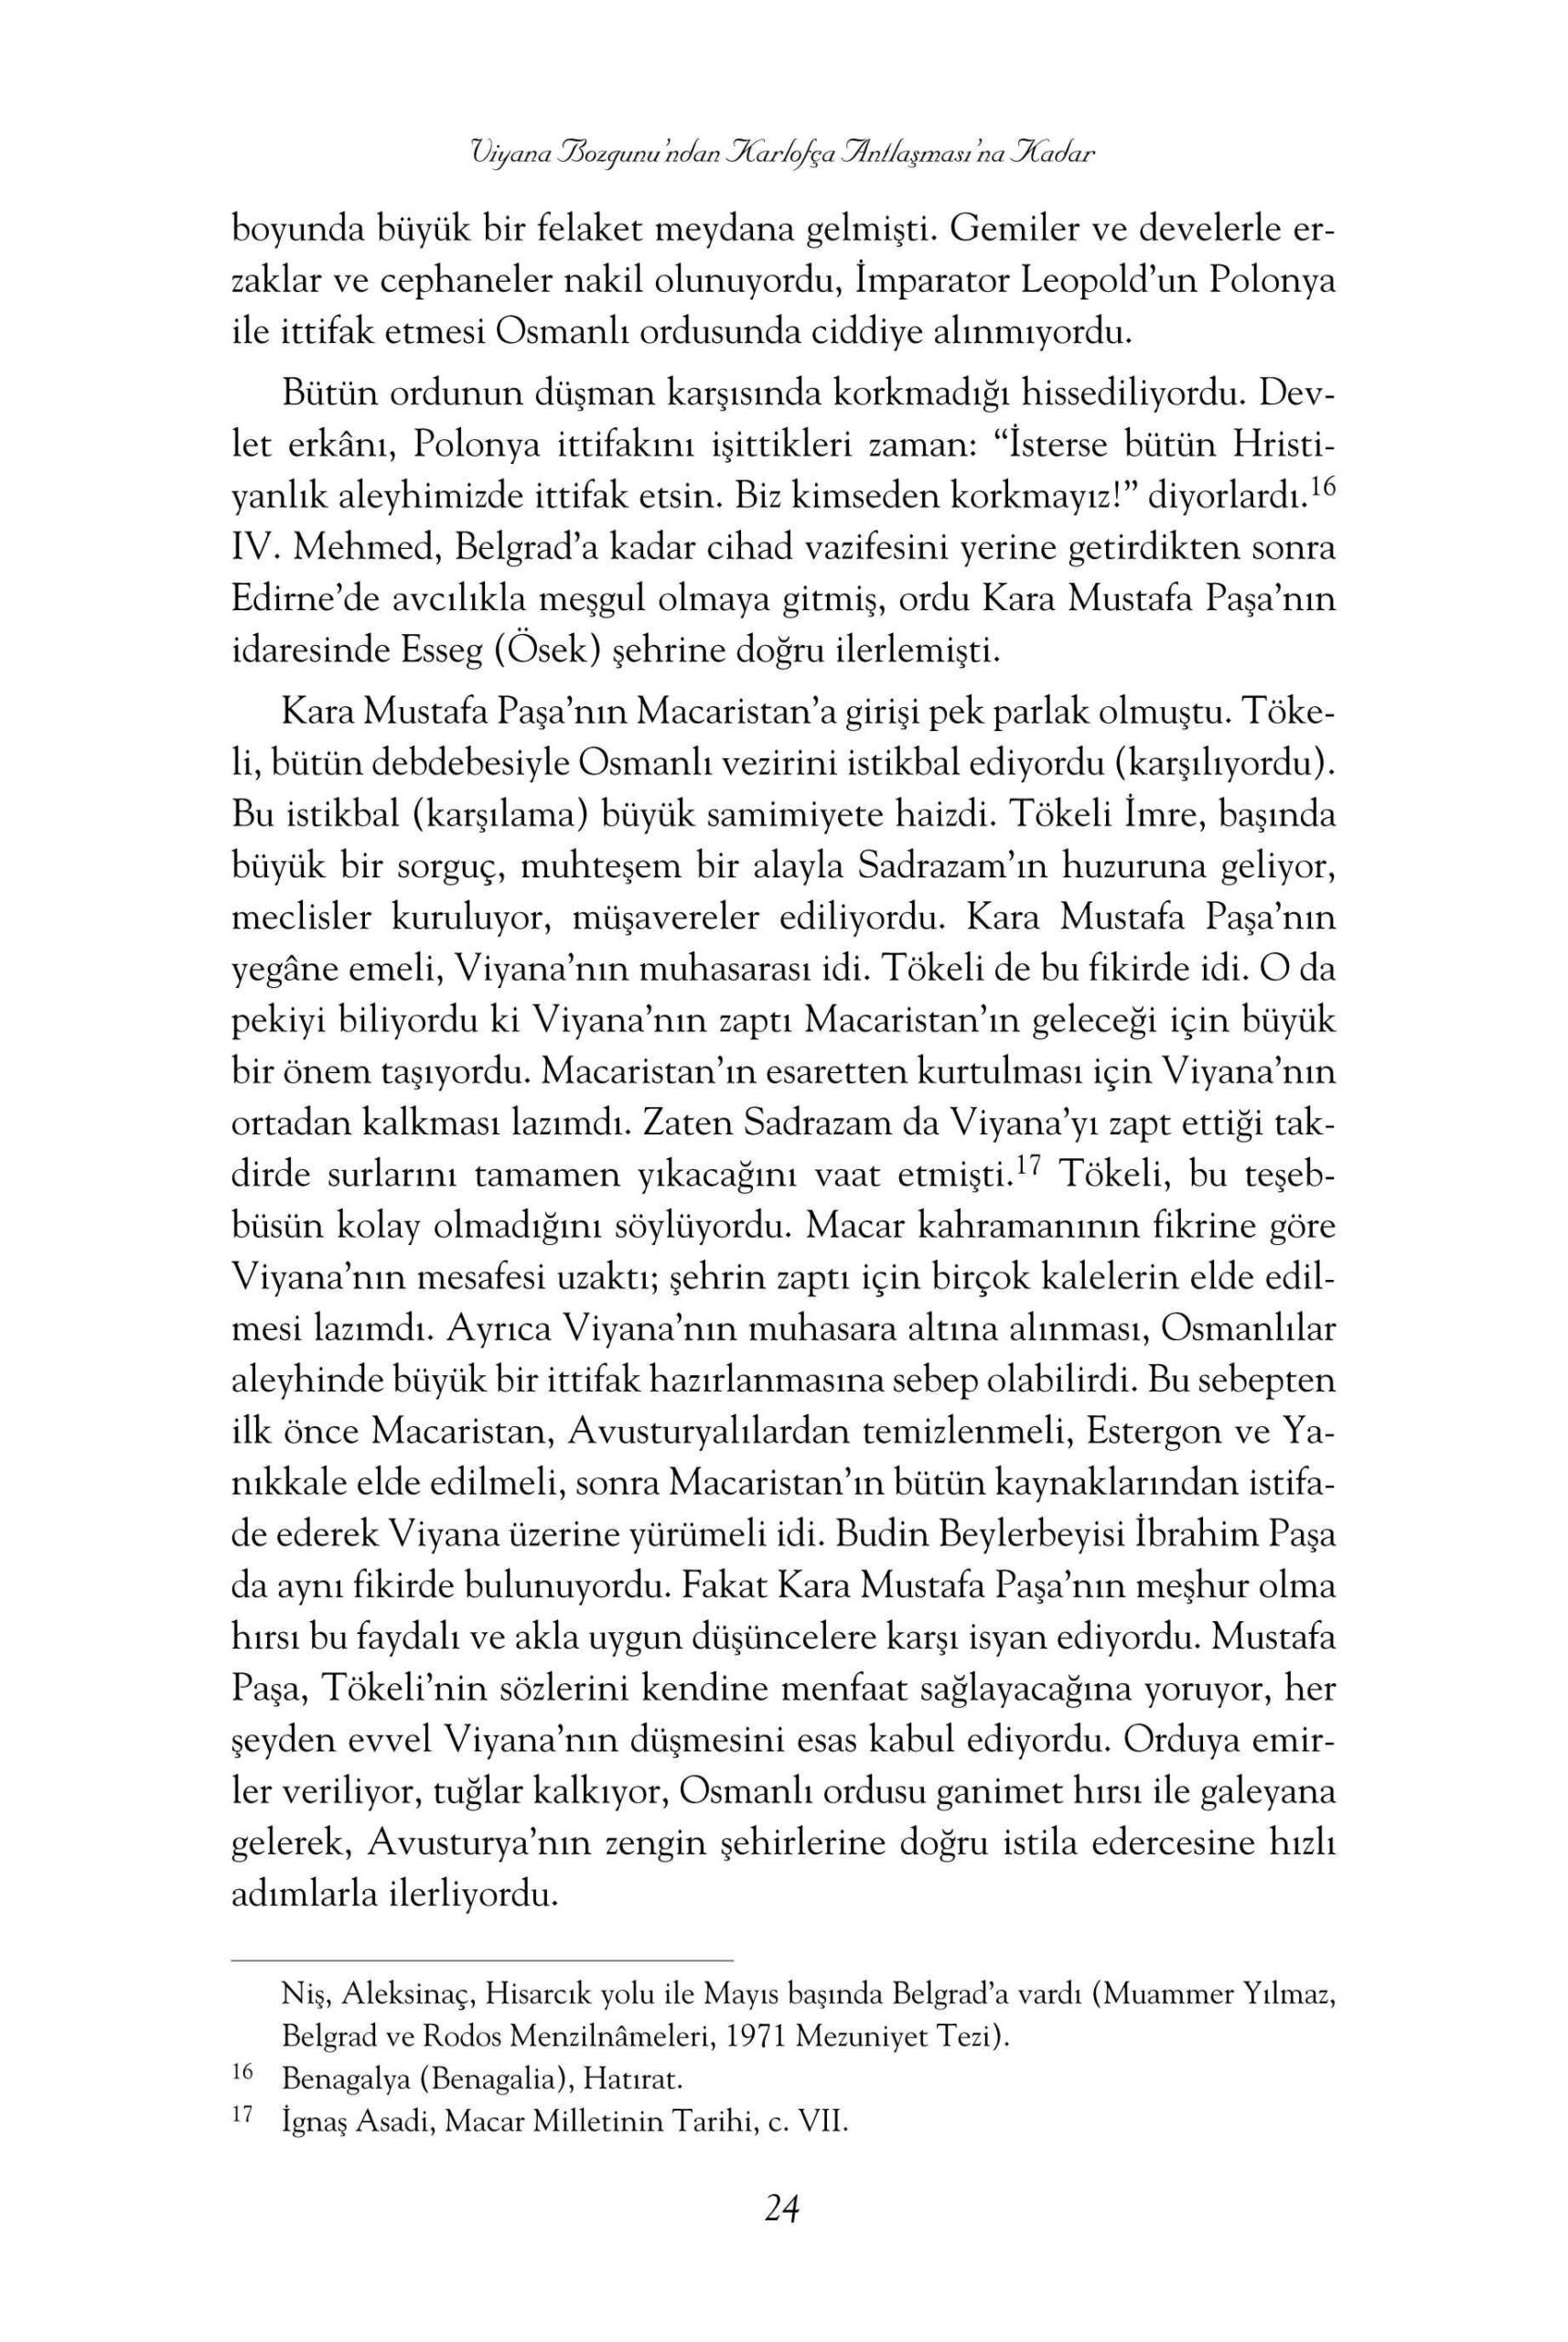 Ahmed Refik - Osmanlinin Felaket Seneleri - YitikHazineYayinlari.pdf, 135-Sayfa 